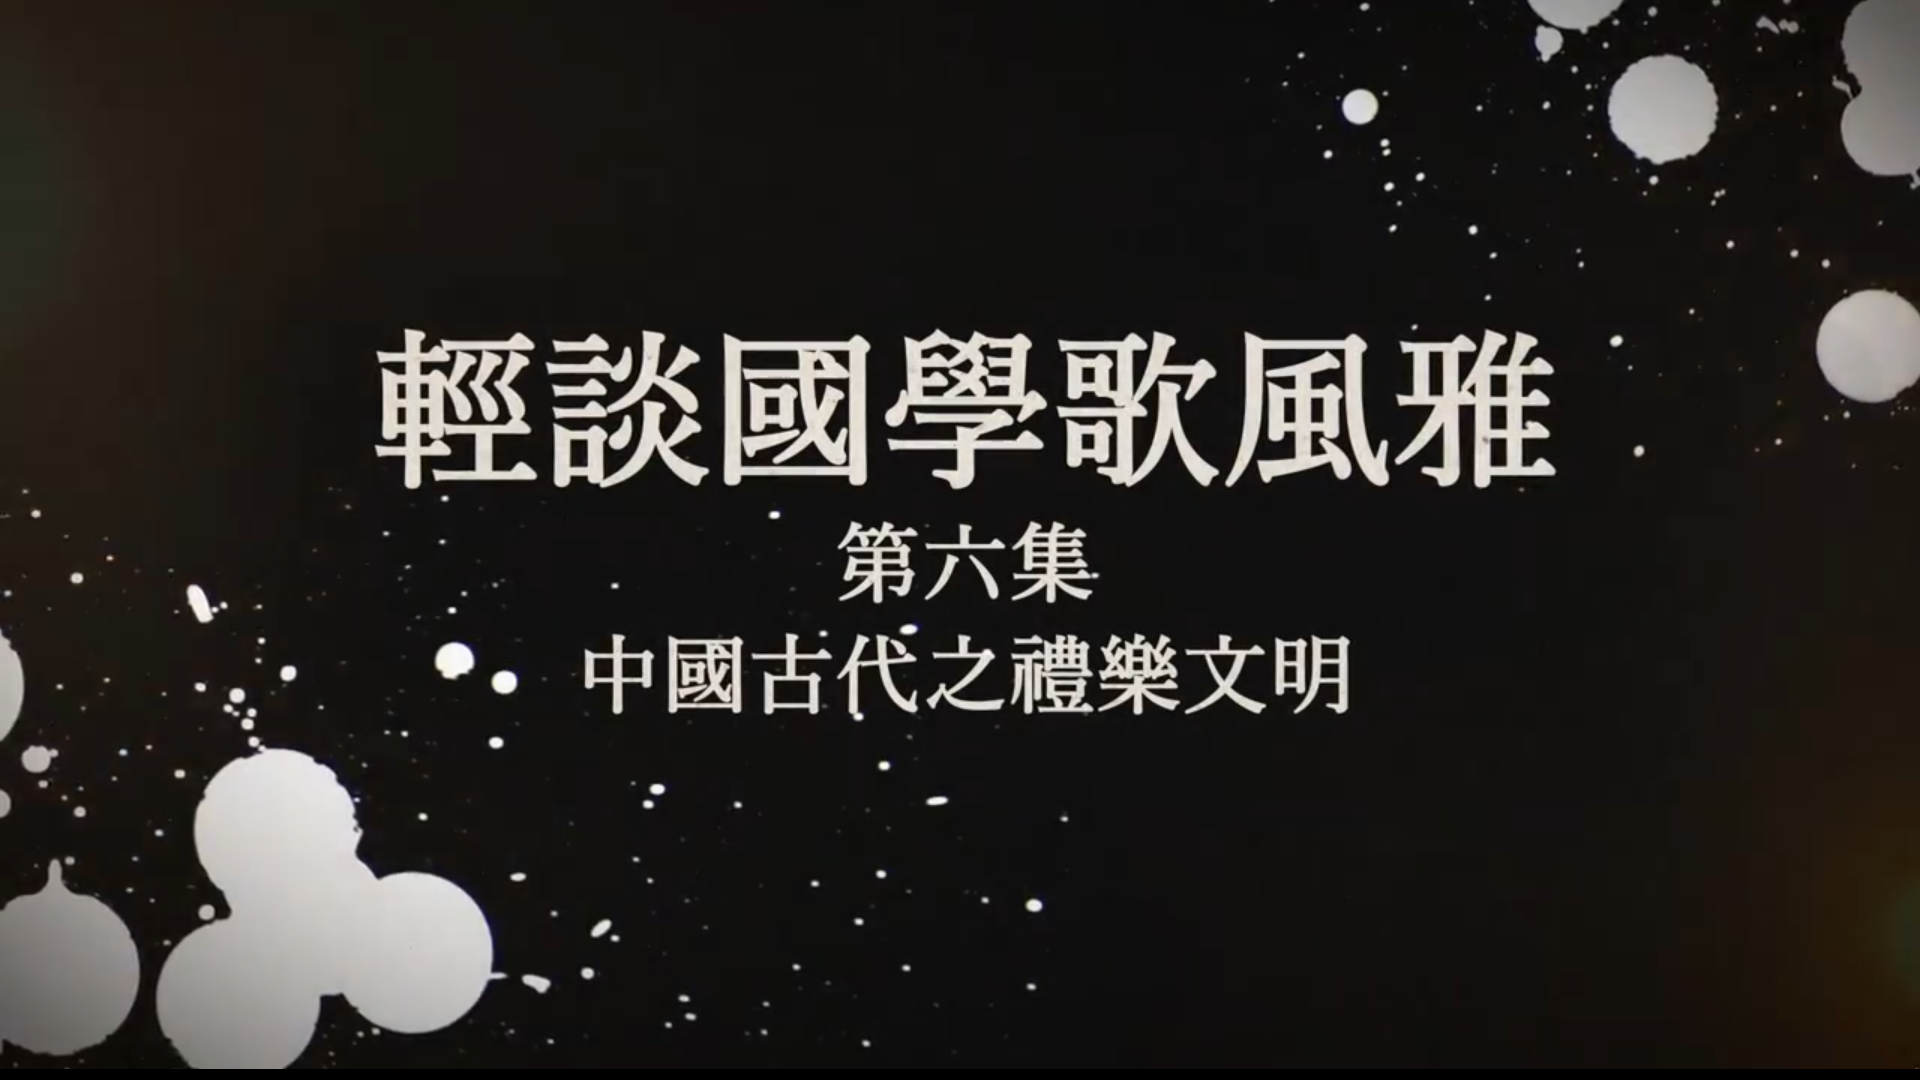 《轻谈国学歌风雅》第六集宣传片